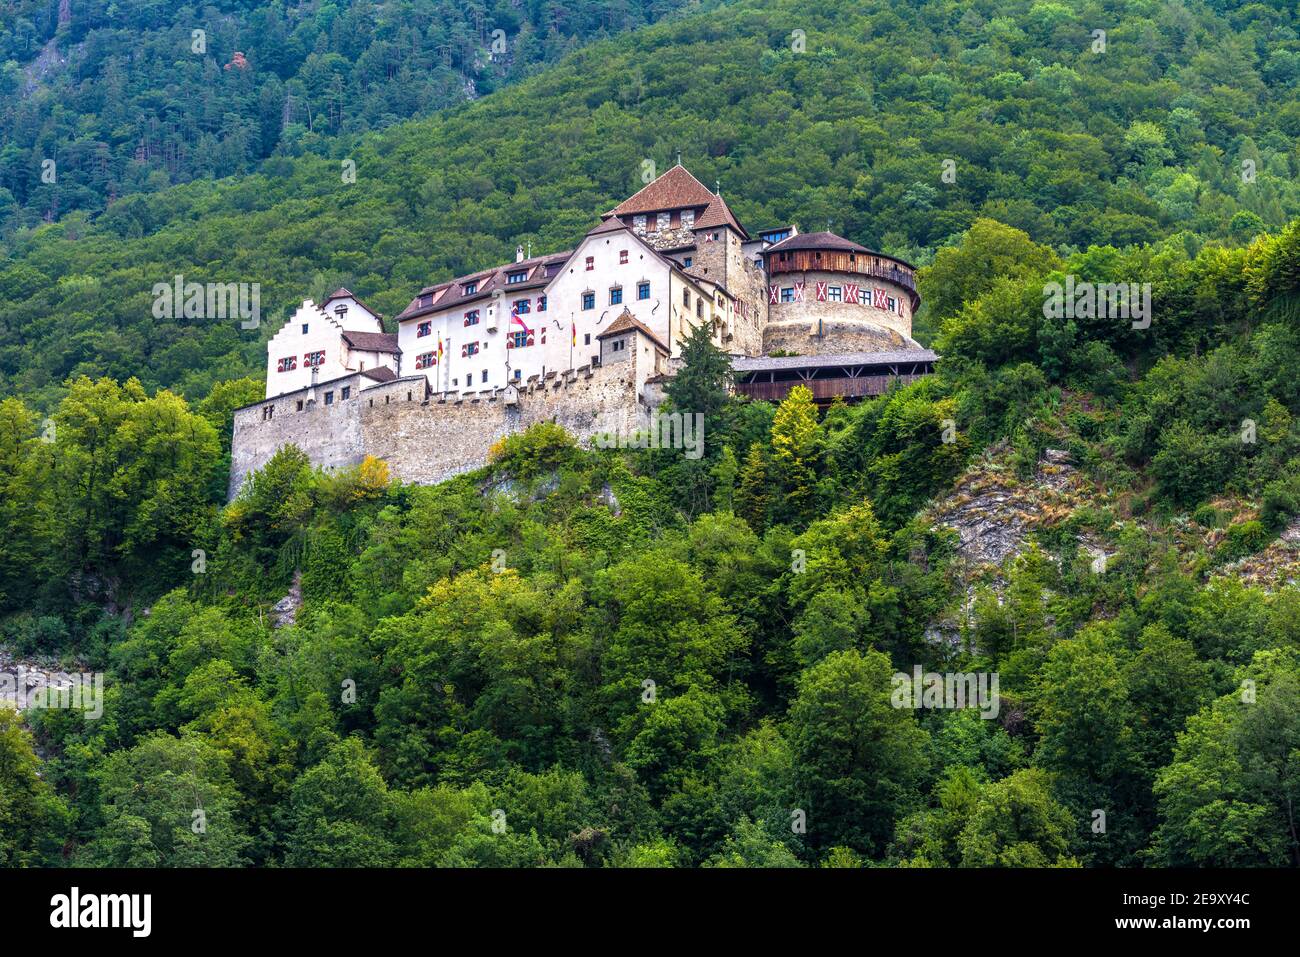 Schloss Vaduz in Liechtenstein, Europa. Es ist Wahrzeichen von Liechtenstein und der Schweiz. Landschaft von grünen Hügeln mit Burg wie Palast. Altes Royal Stockfoto